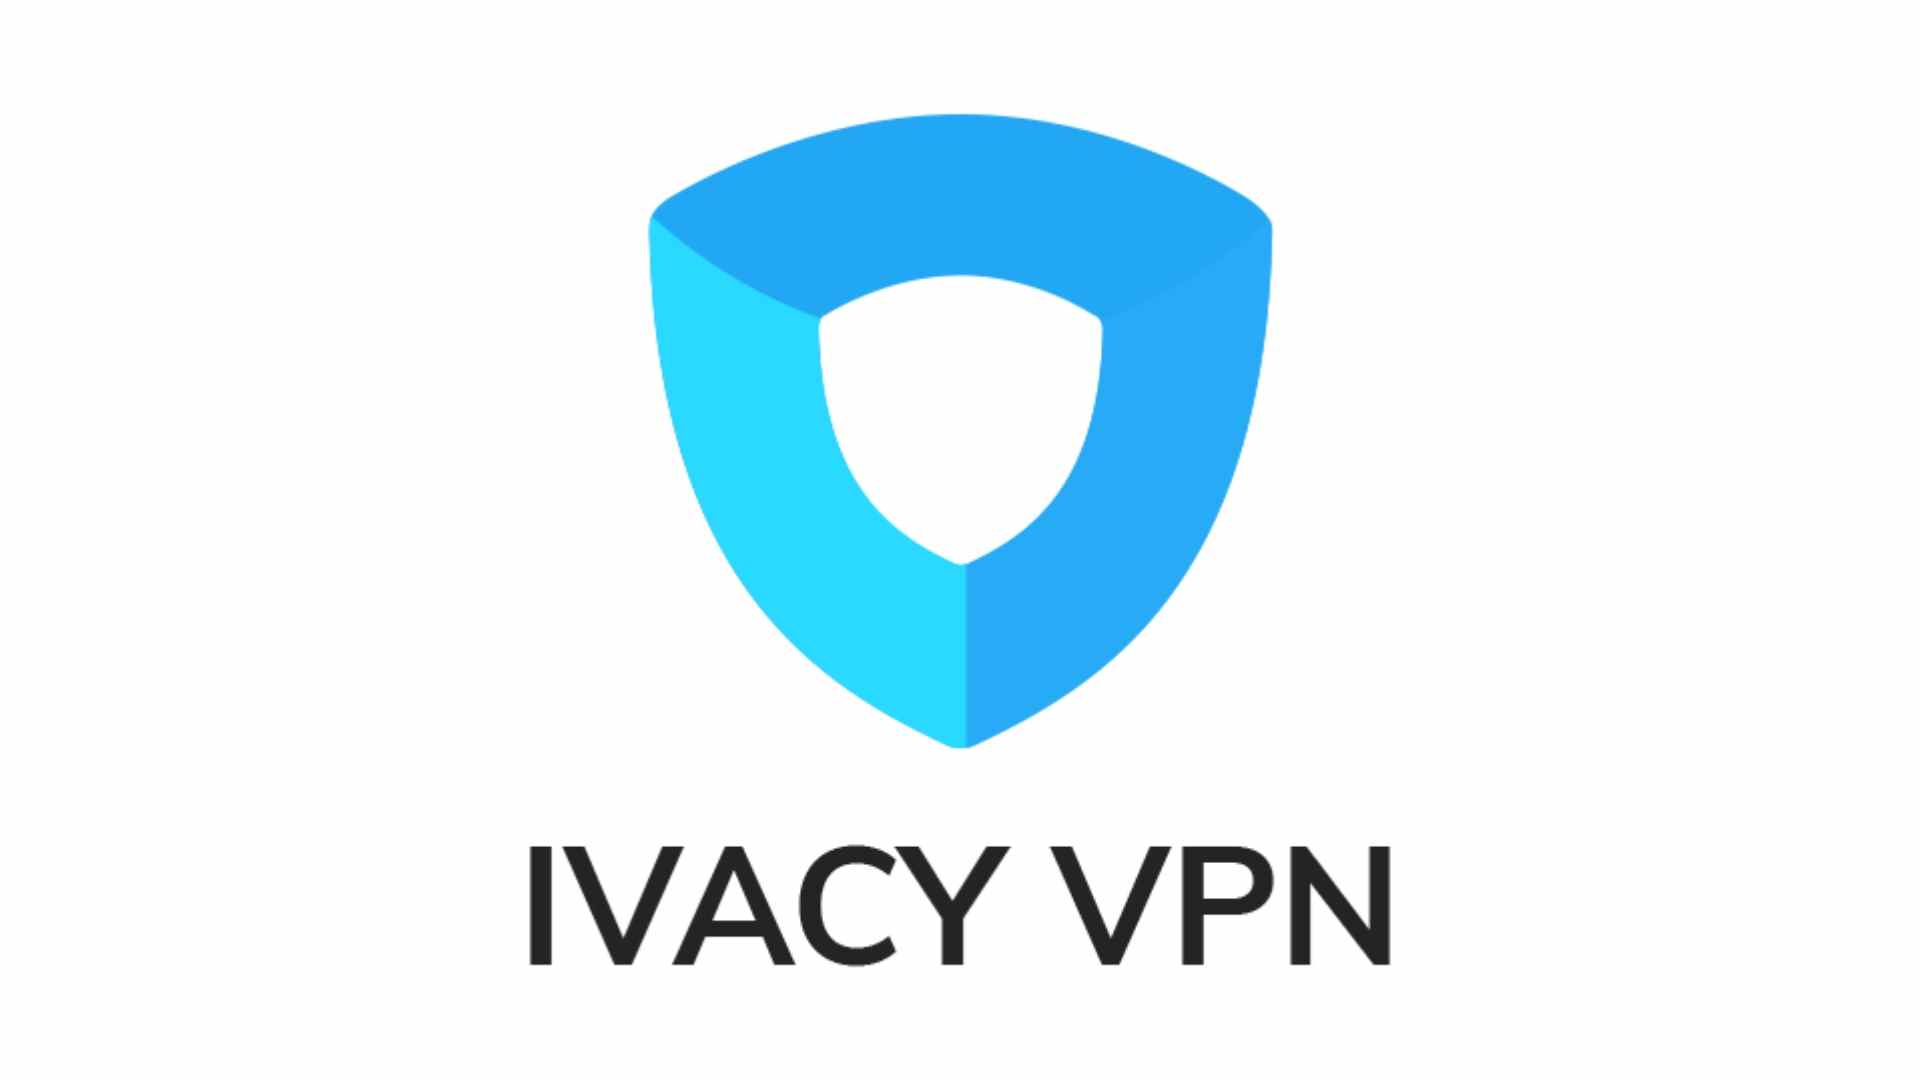 VPN le plus sécurisé : Ivacy VPN.  L'image montre le logo de l'entreprise.